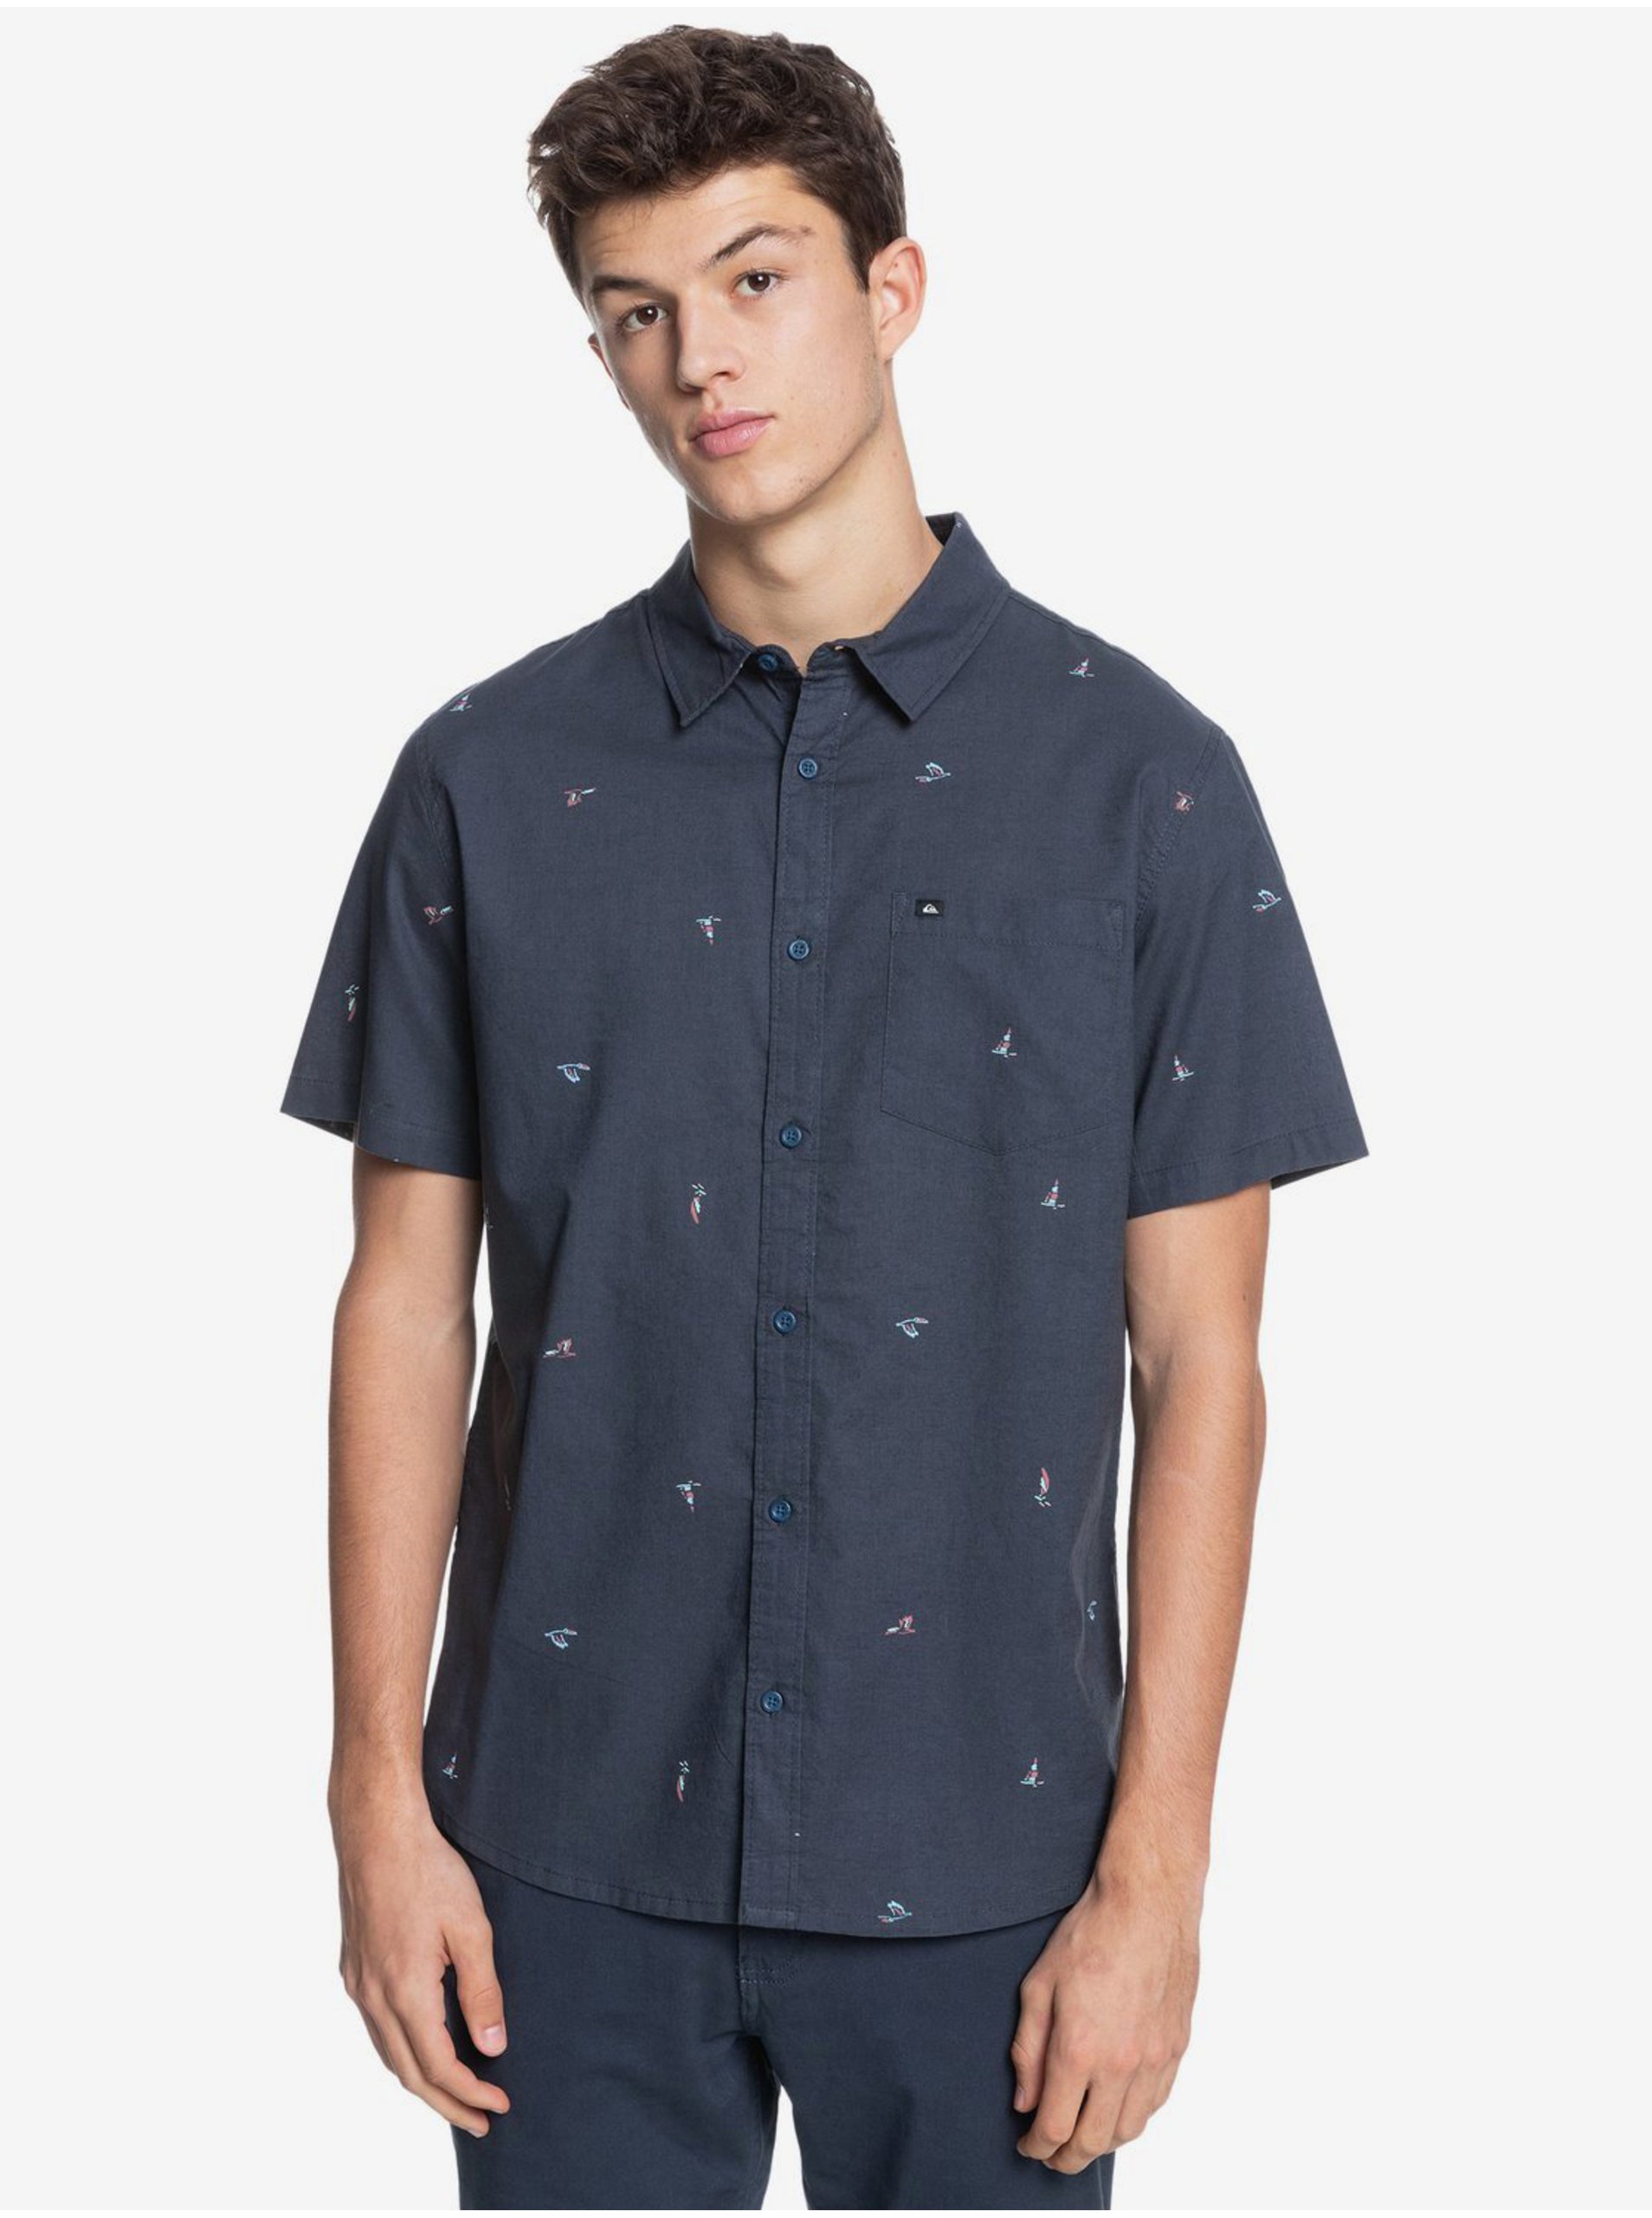 E-shop Tmavě modrá pánská vzorovaná košile s krátkým rukávem Quiksilver